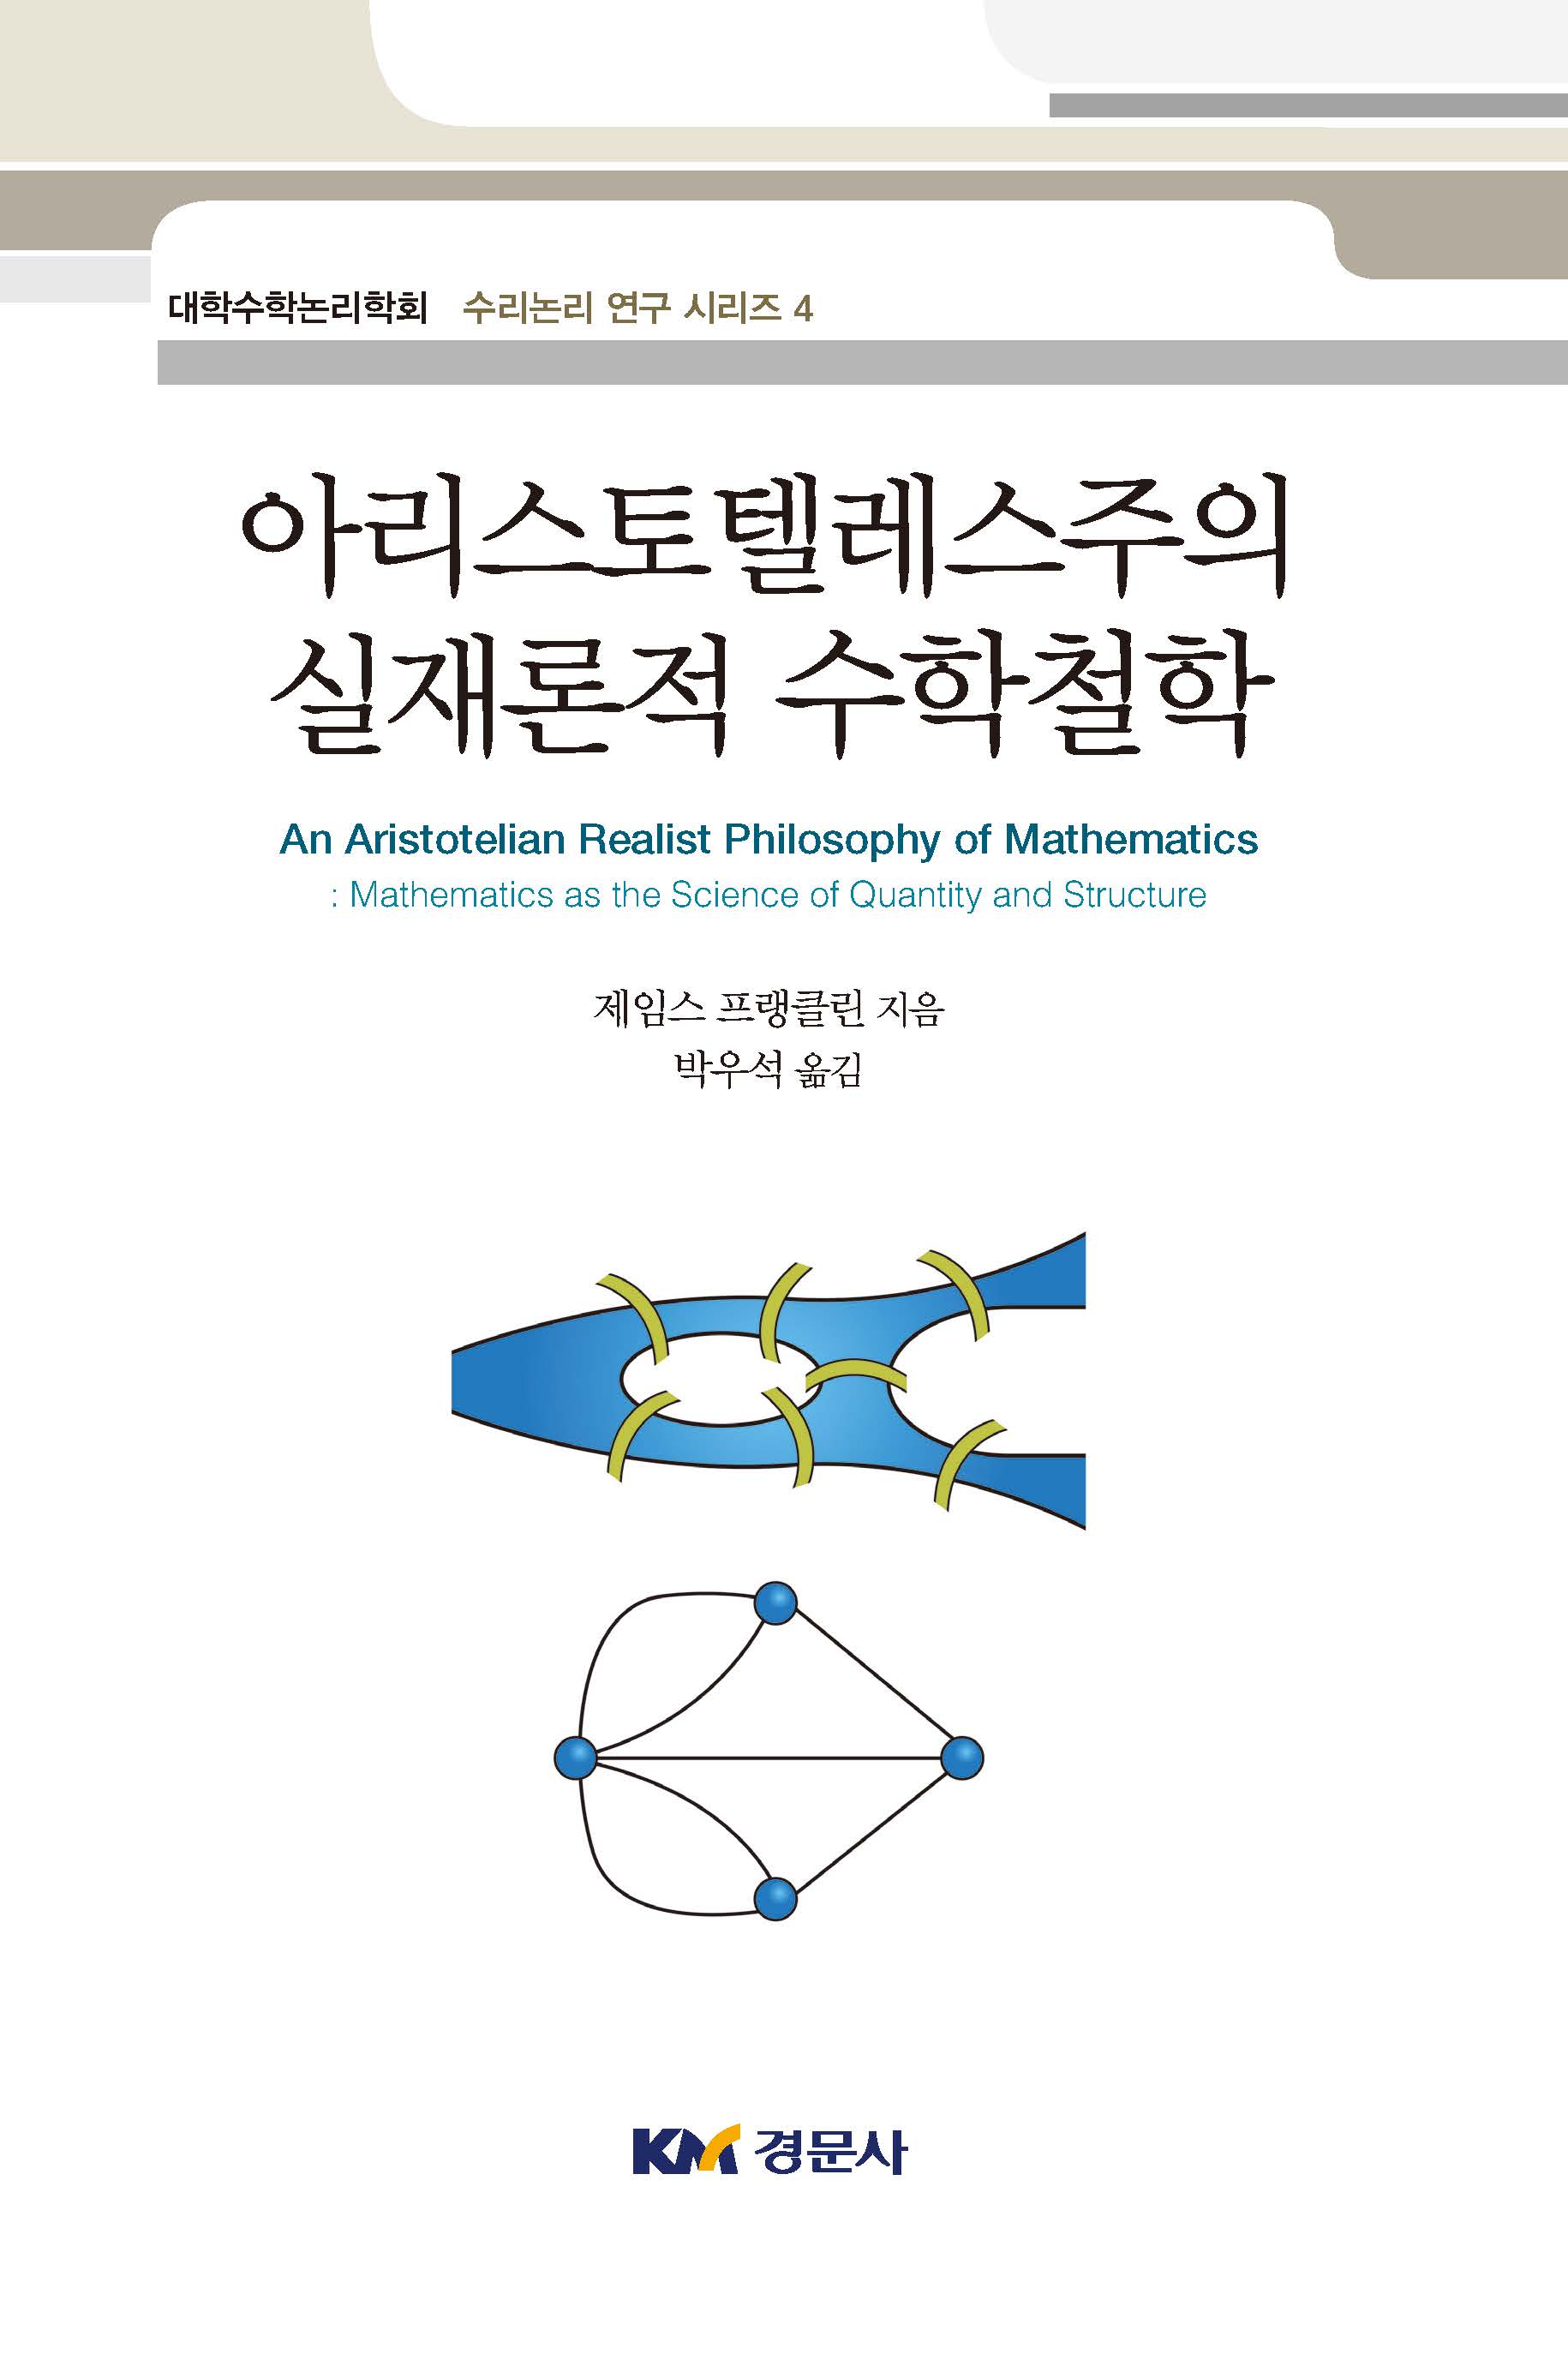 아리스토텔레스주의 실재론적 수학철학-대학수학논리학회 수리논구 연구 시리즈4